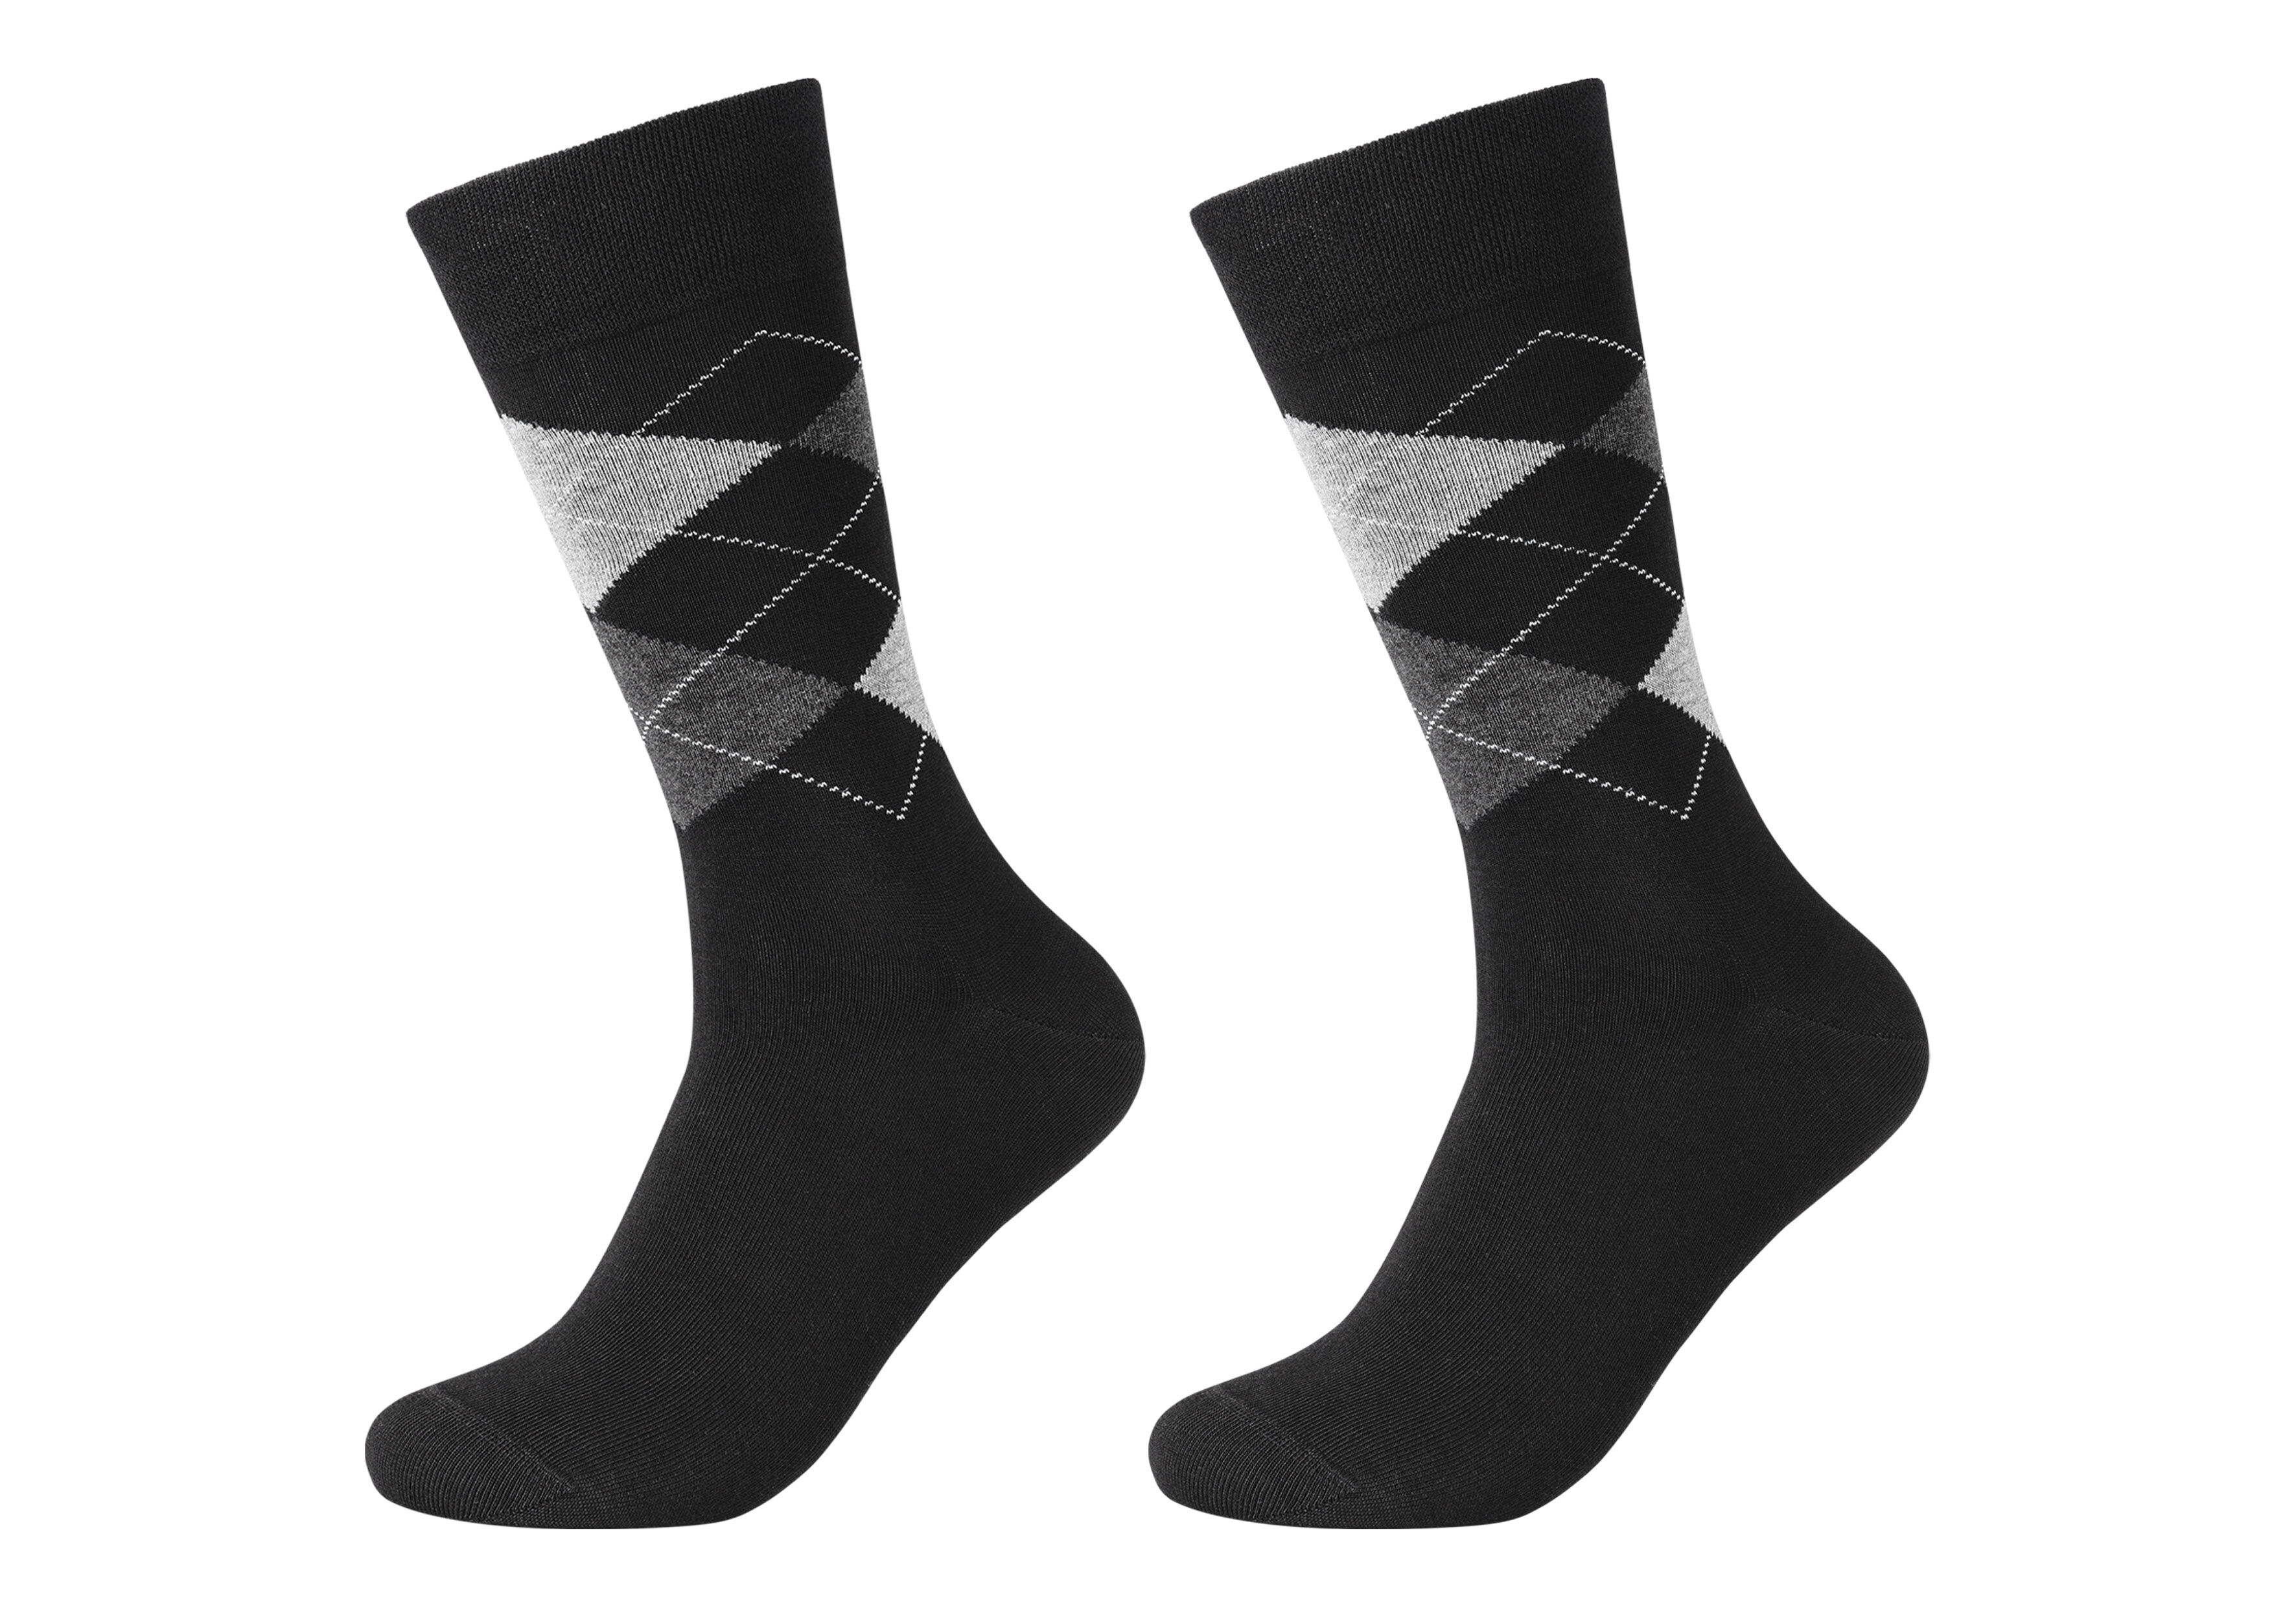 Herren-Socke im Argyle-Muster aus Baumwoll-Mix im Doppelpack